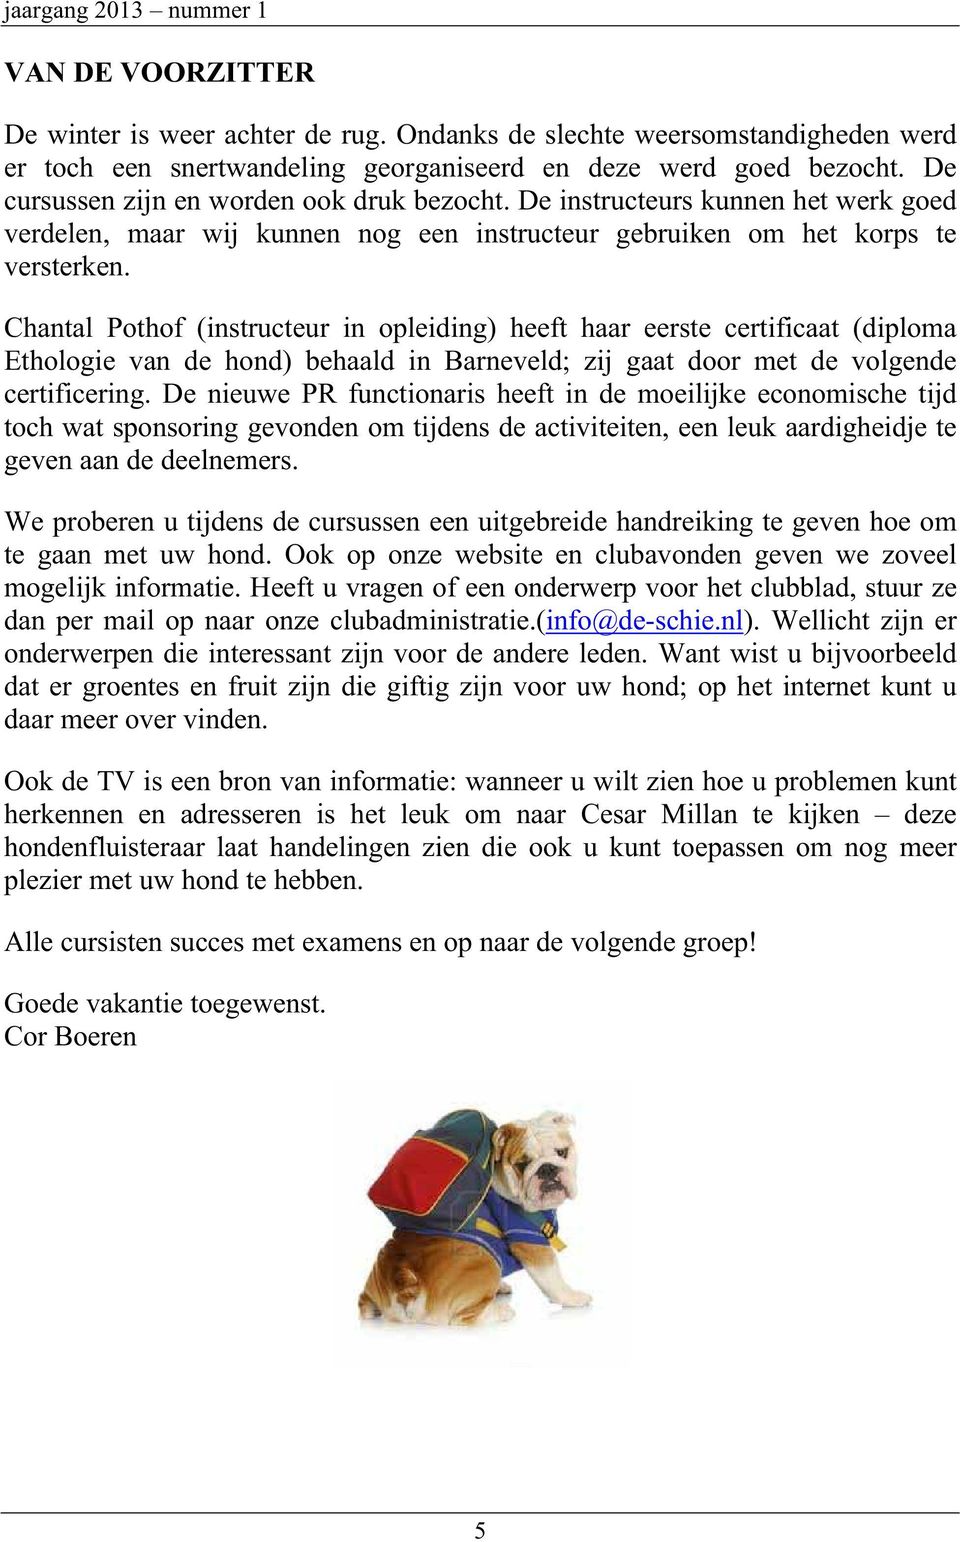 Chantal Pothof (instructeur in opleiding) heeft haar eerste certificaat (diploma Ethologie van de hond) behaald in Barneveld; zij gaat door met de volgende certificering.